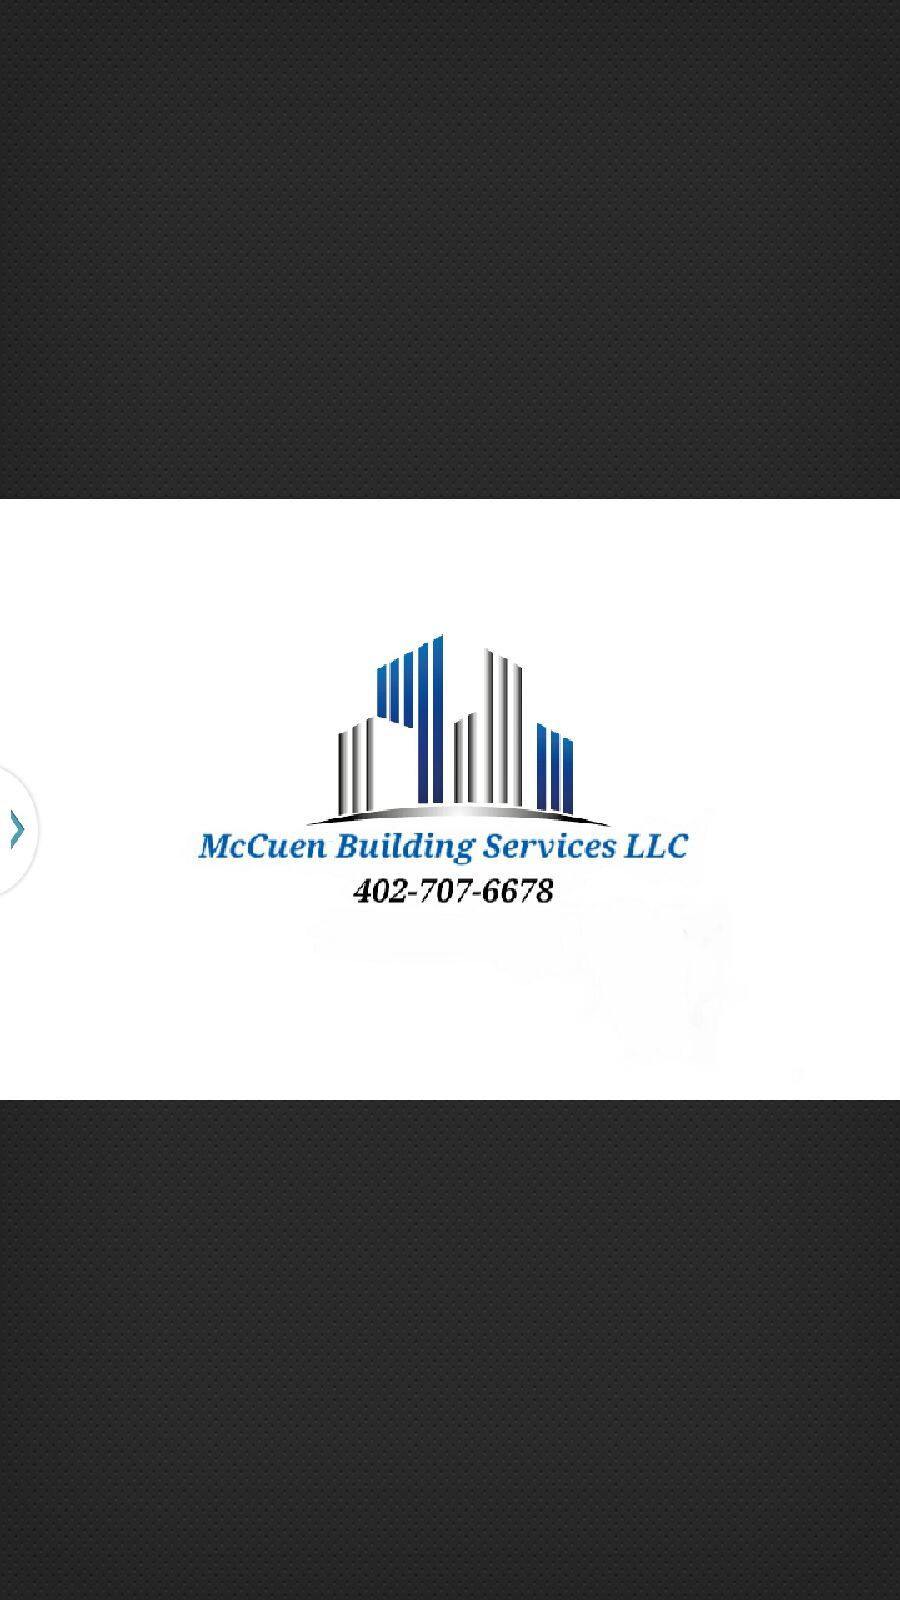 McCuen Building Services LLC